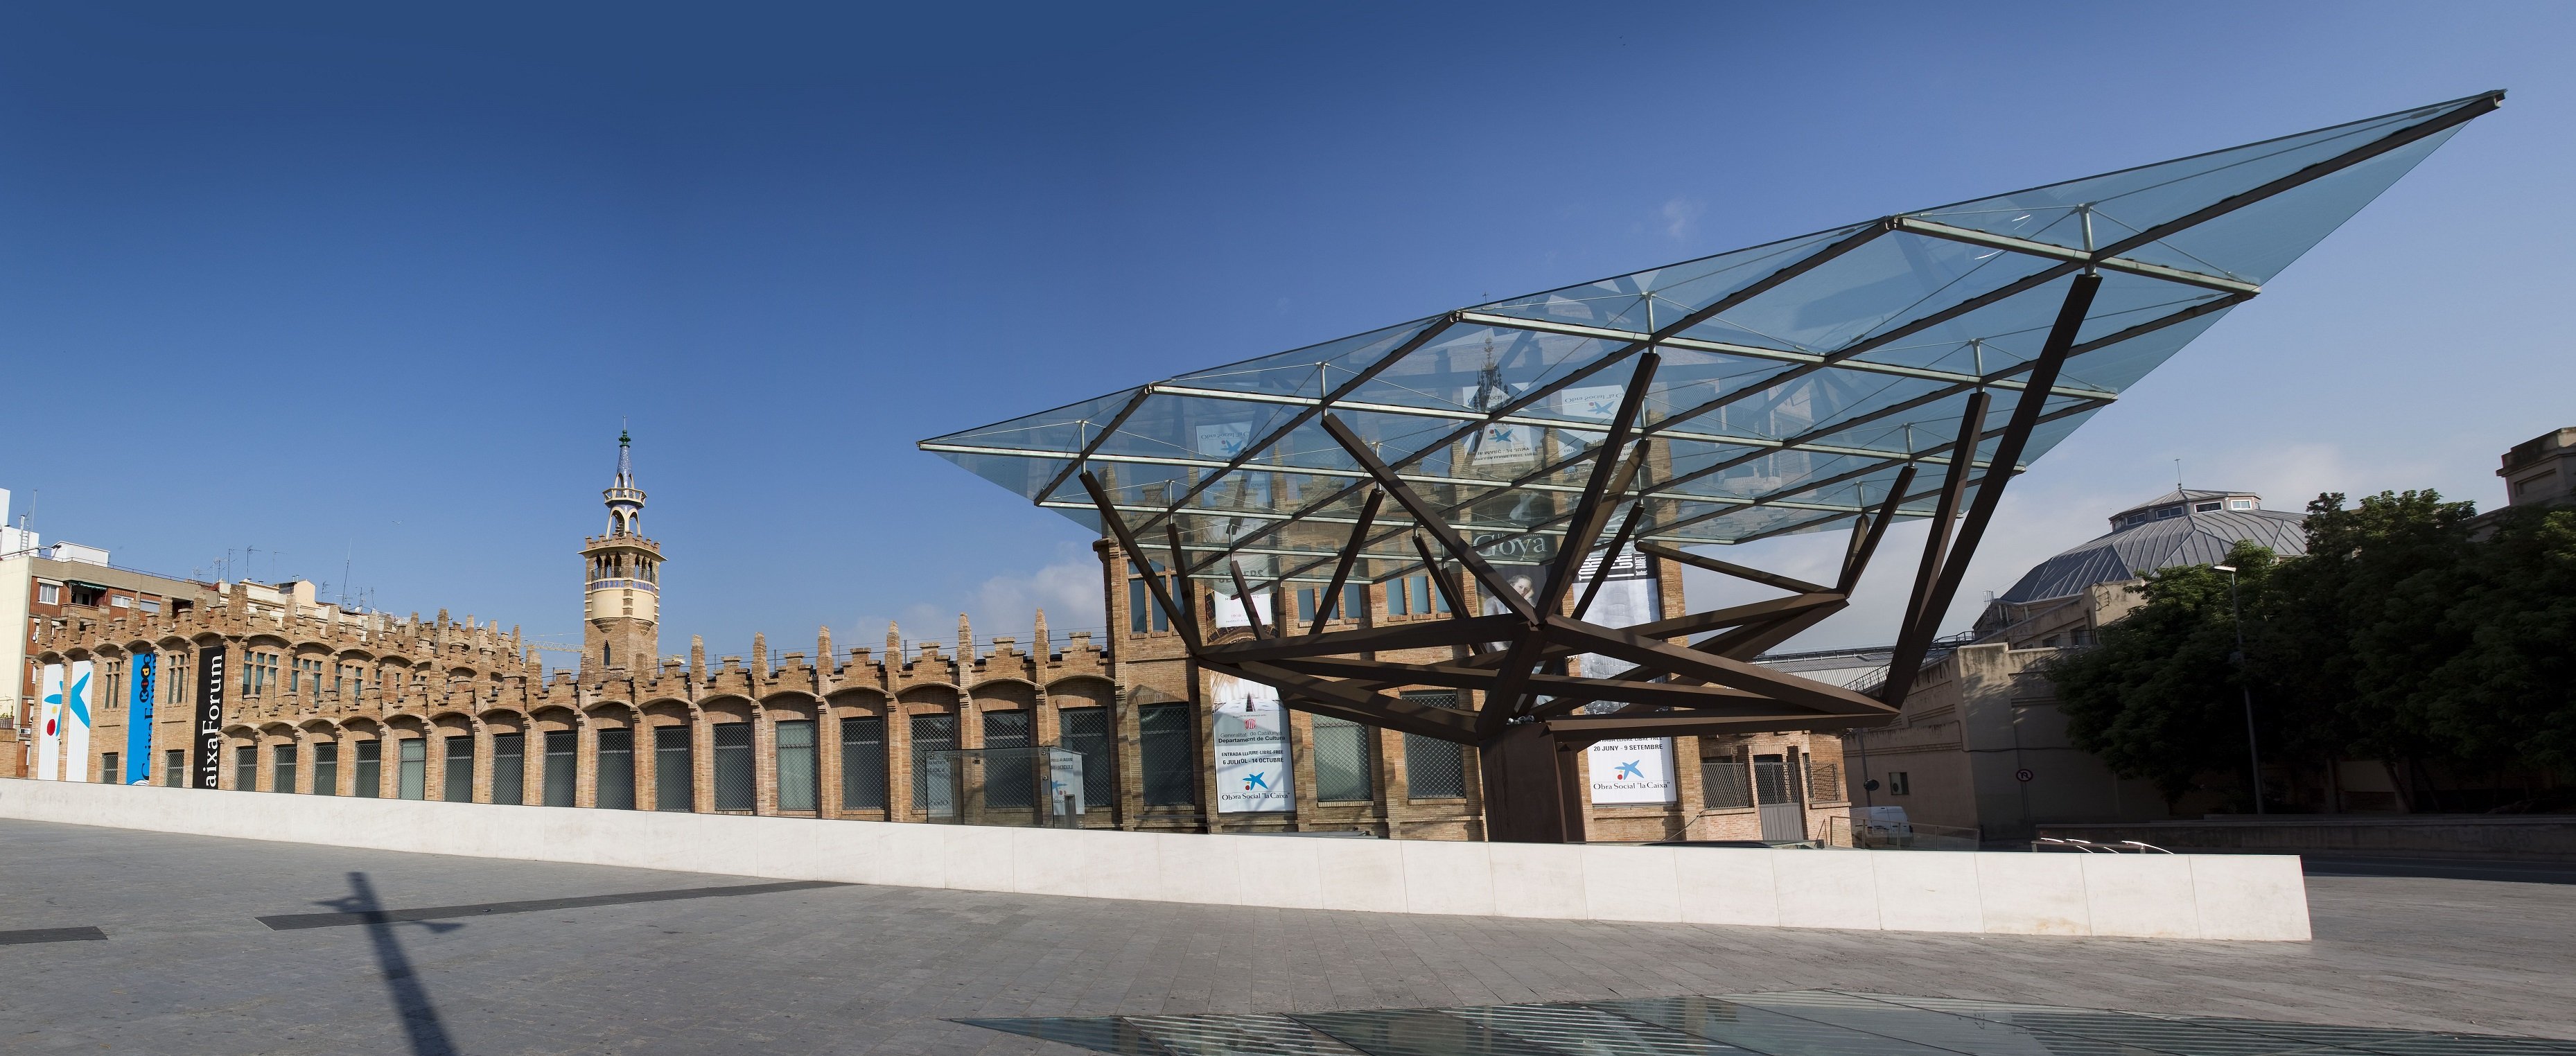 El CaixaForum, el primer museo de Barcelona que reabre